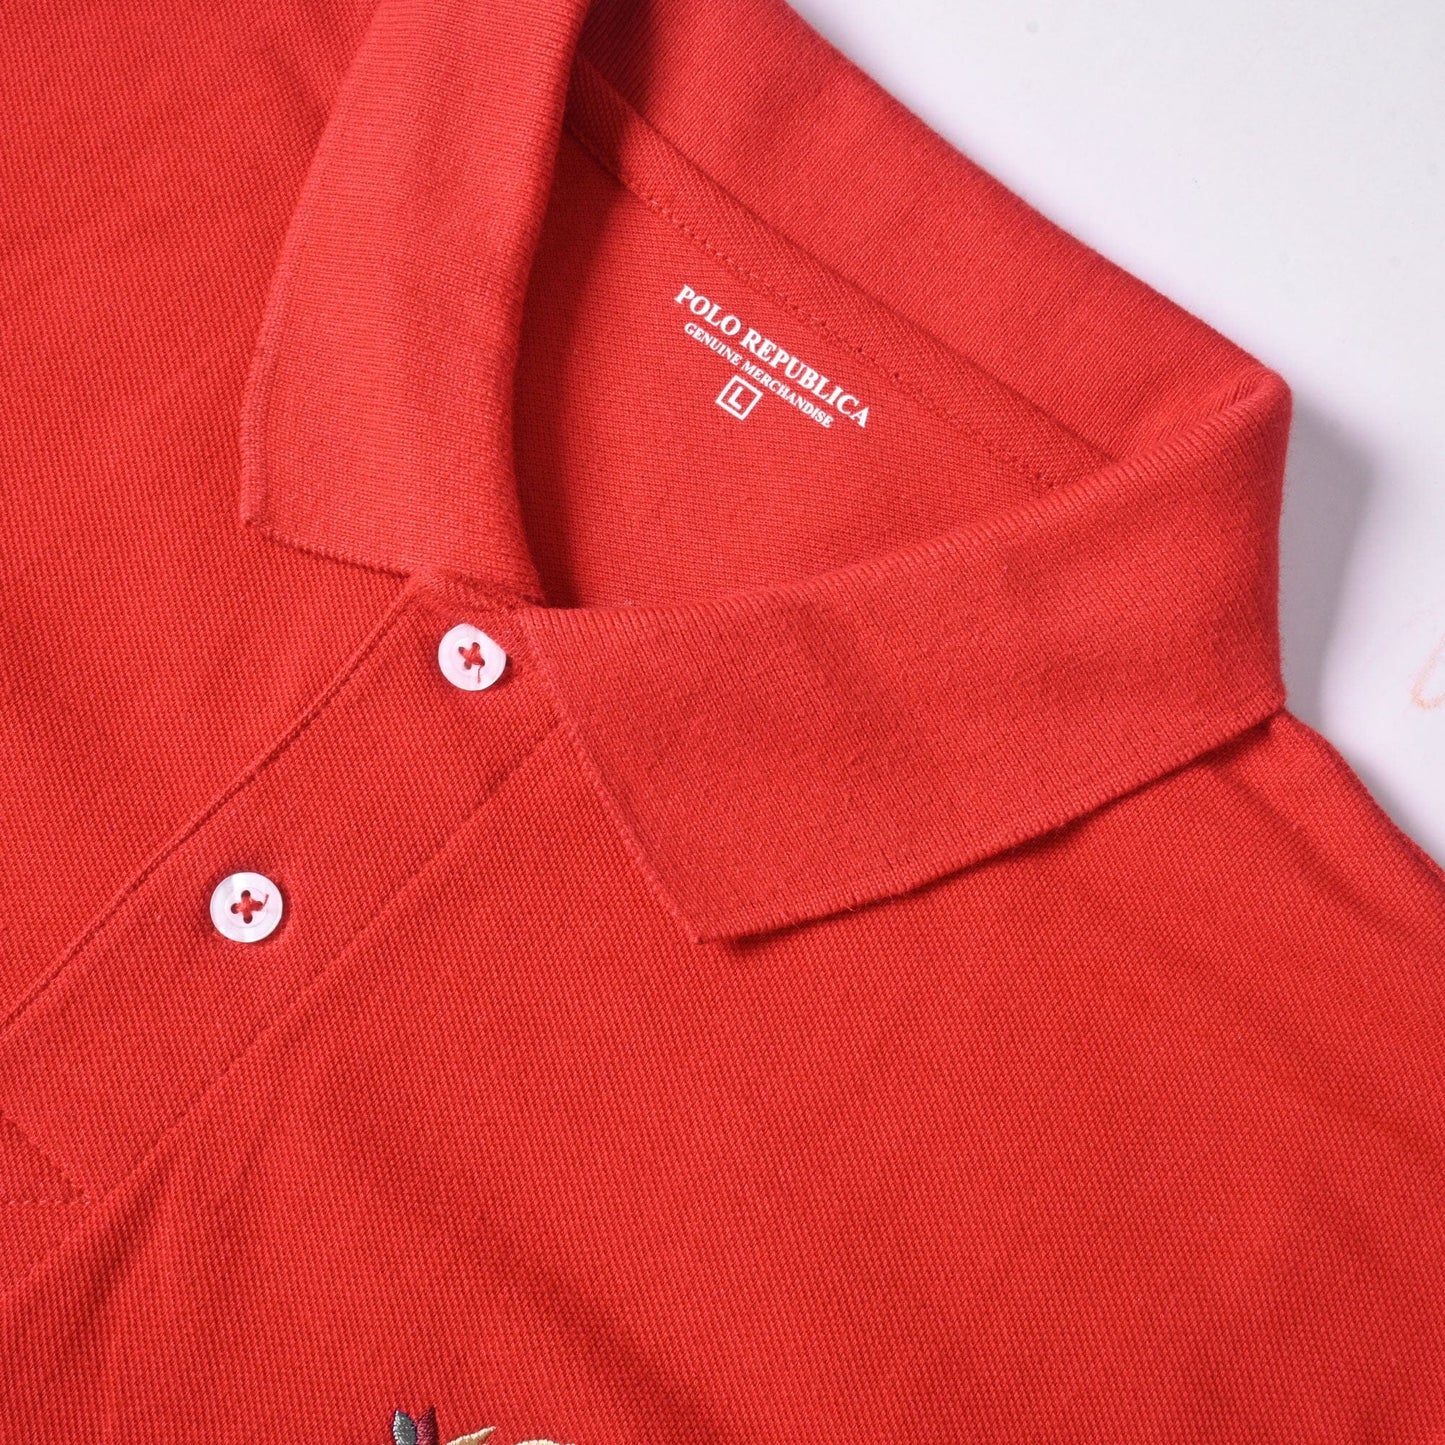 Polo Republica Men's U Crest & Polo Embroidered Short Sleeve Polo Shirt Men's Polo Shirt Polo Republica 